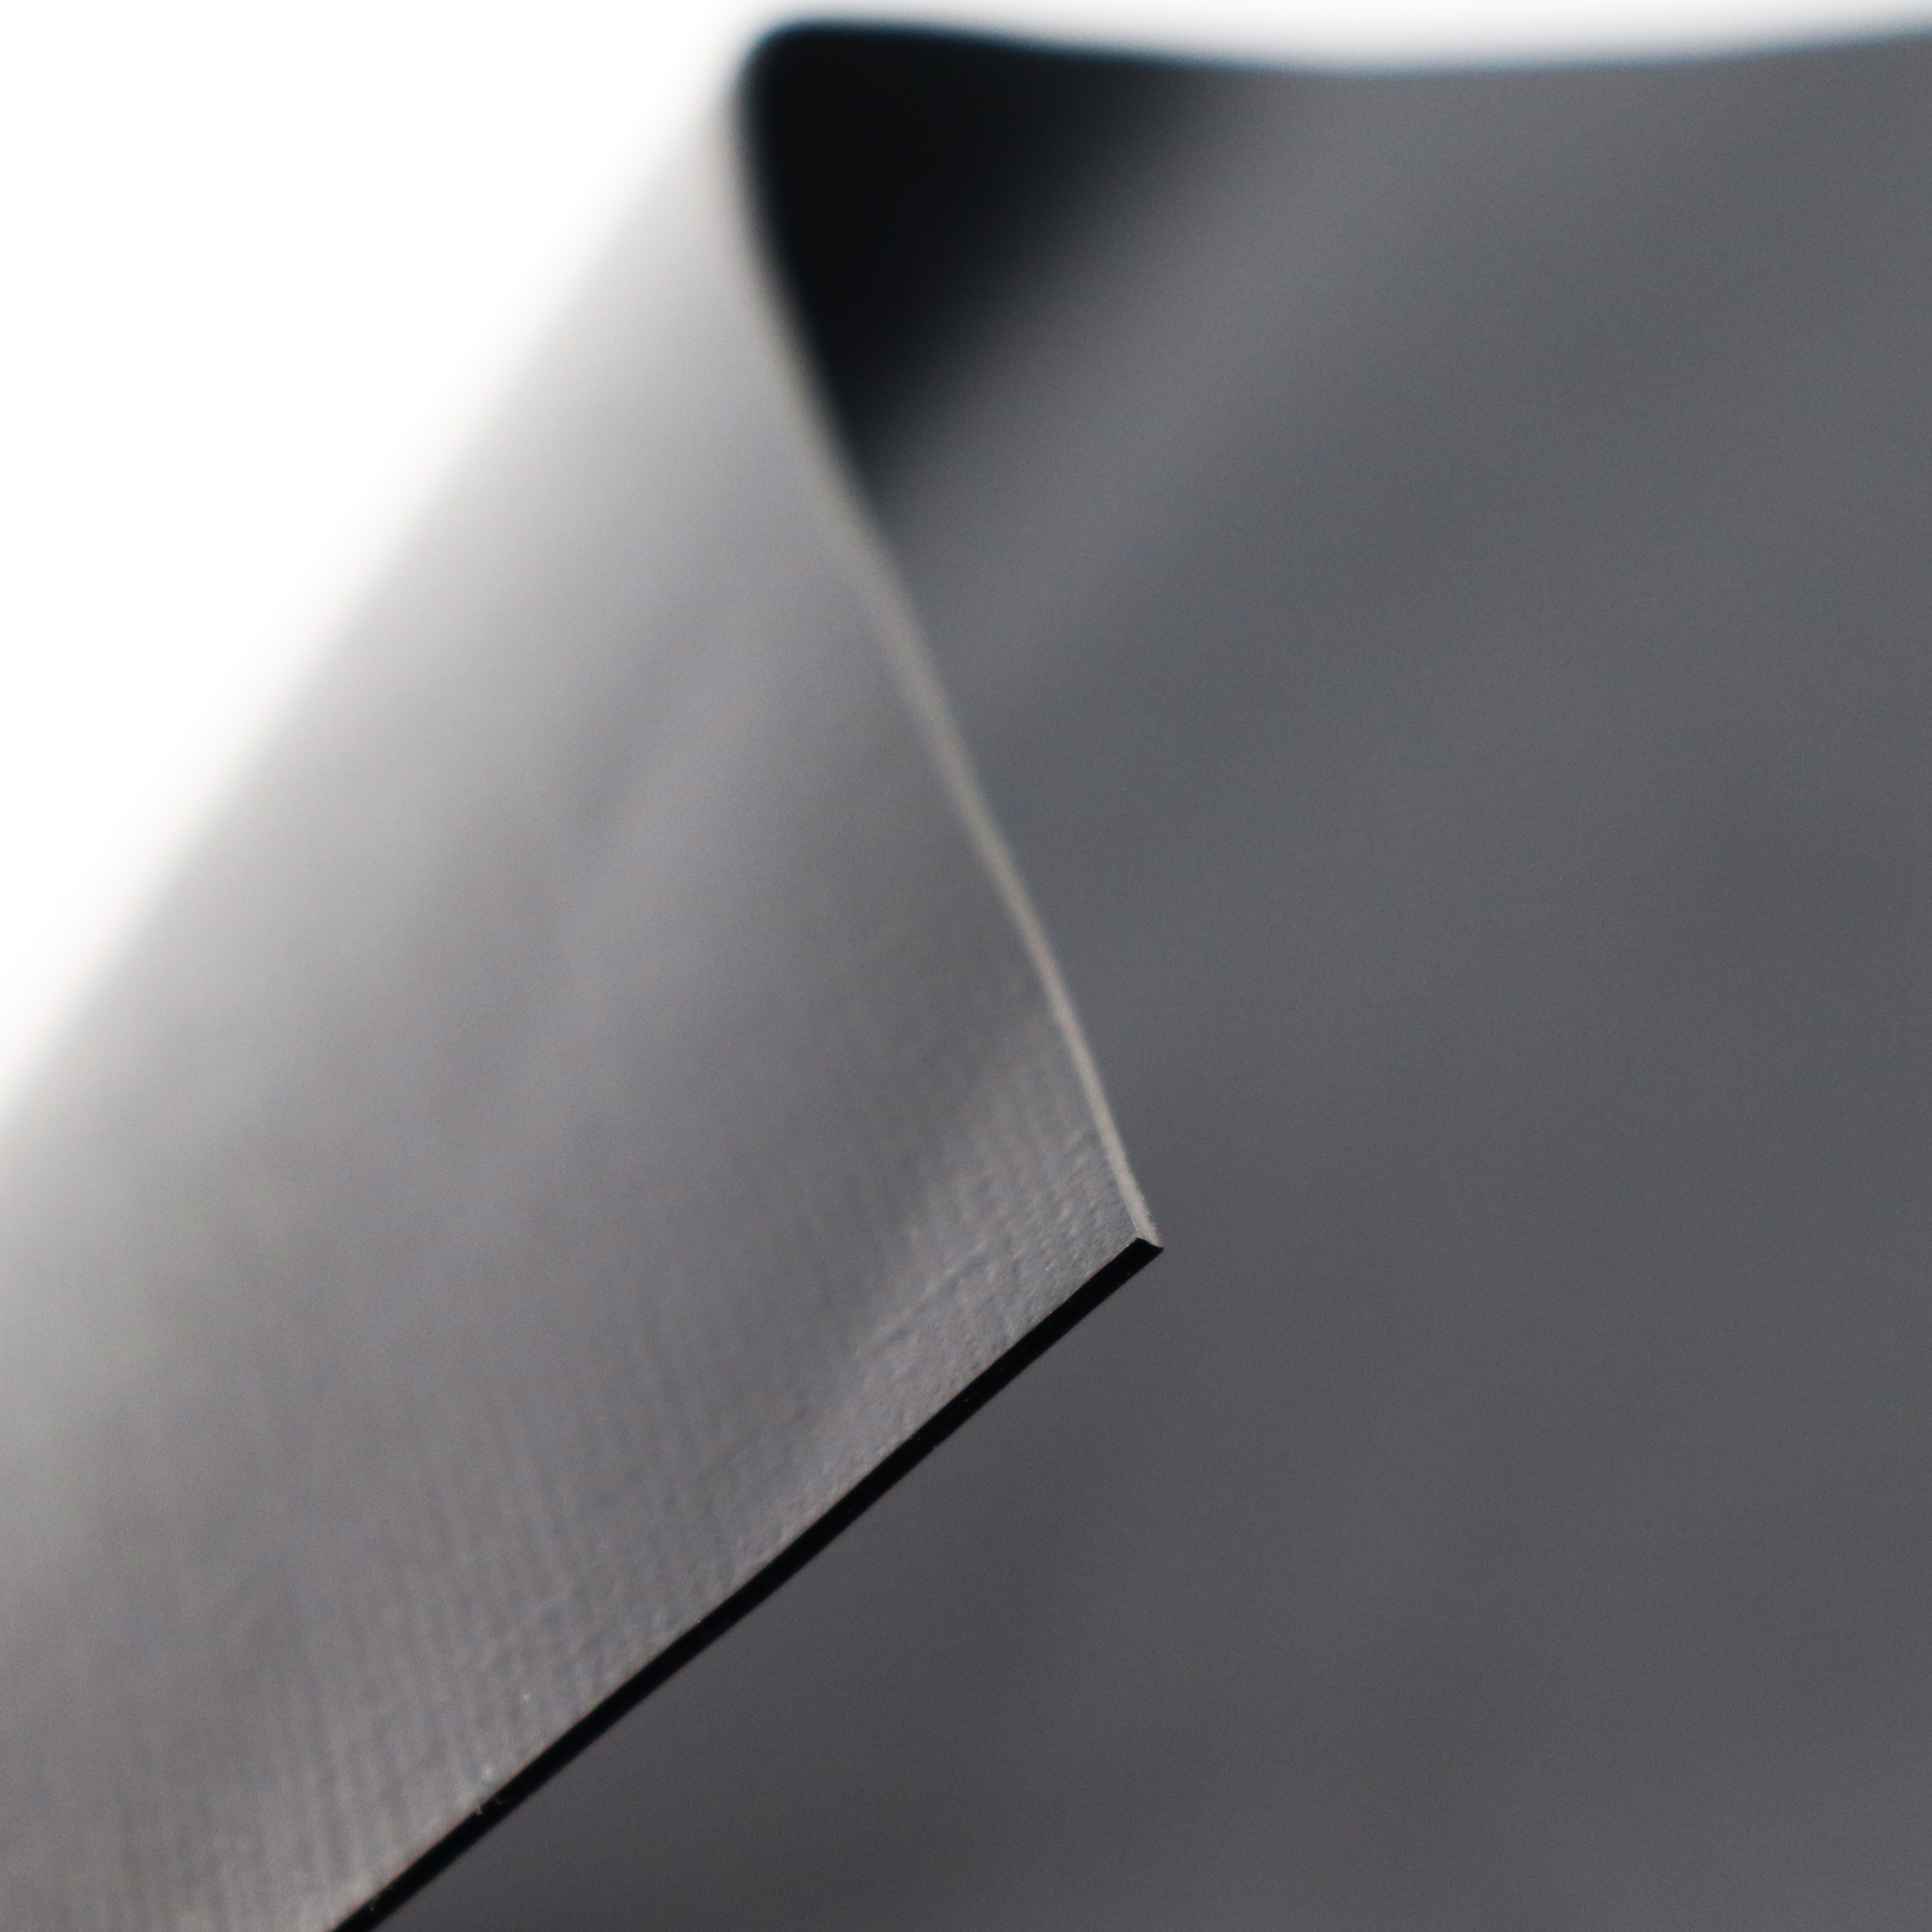 Teichfolie PVC 0,5mm schwarz in 10m x 2m mit Vlies 300g/qm 